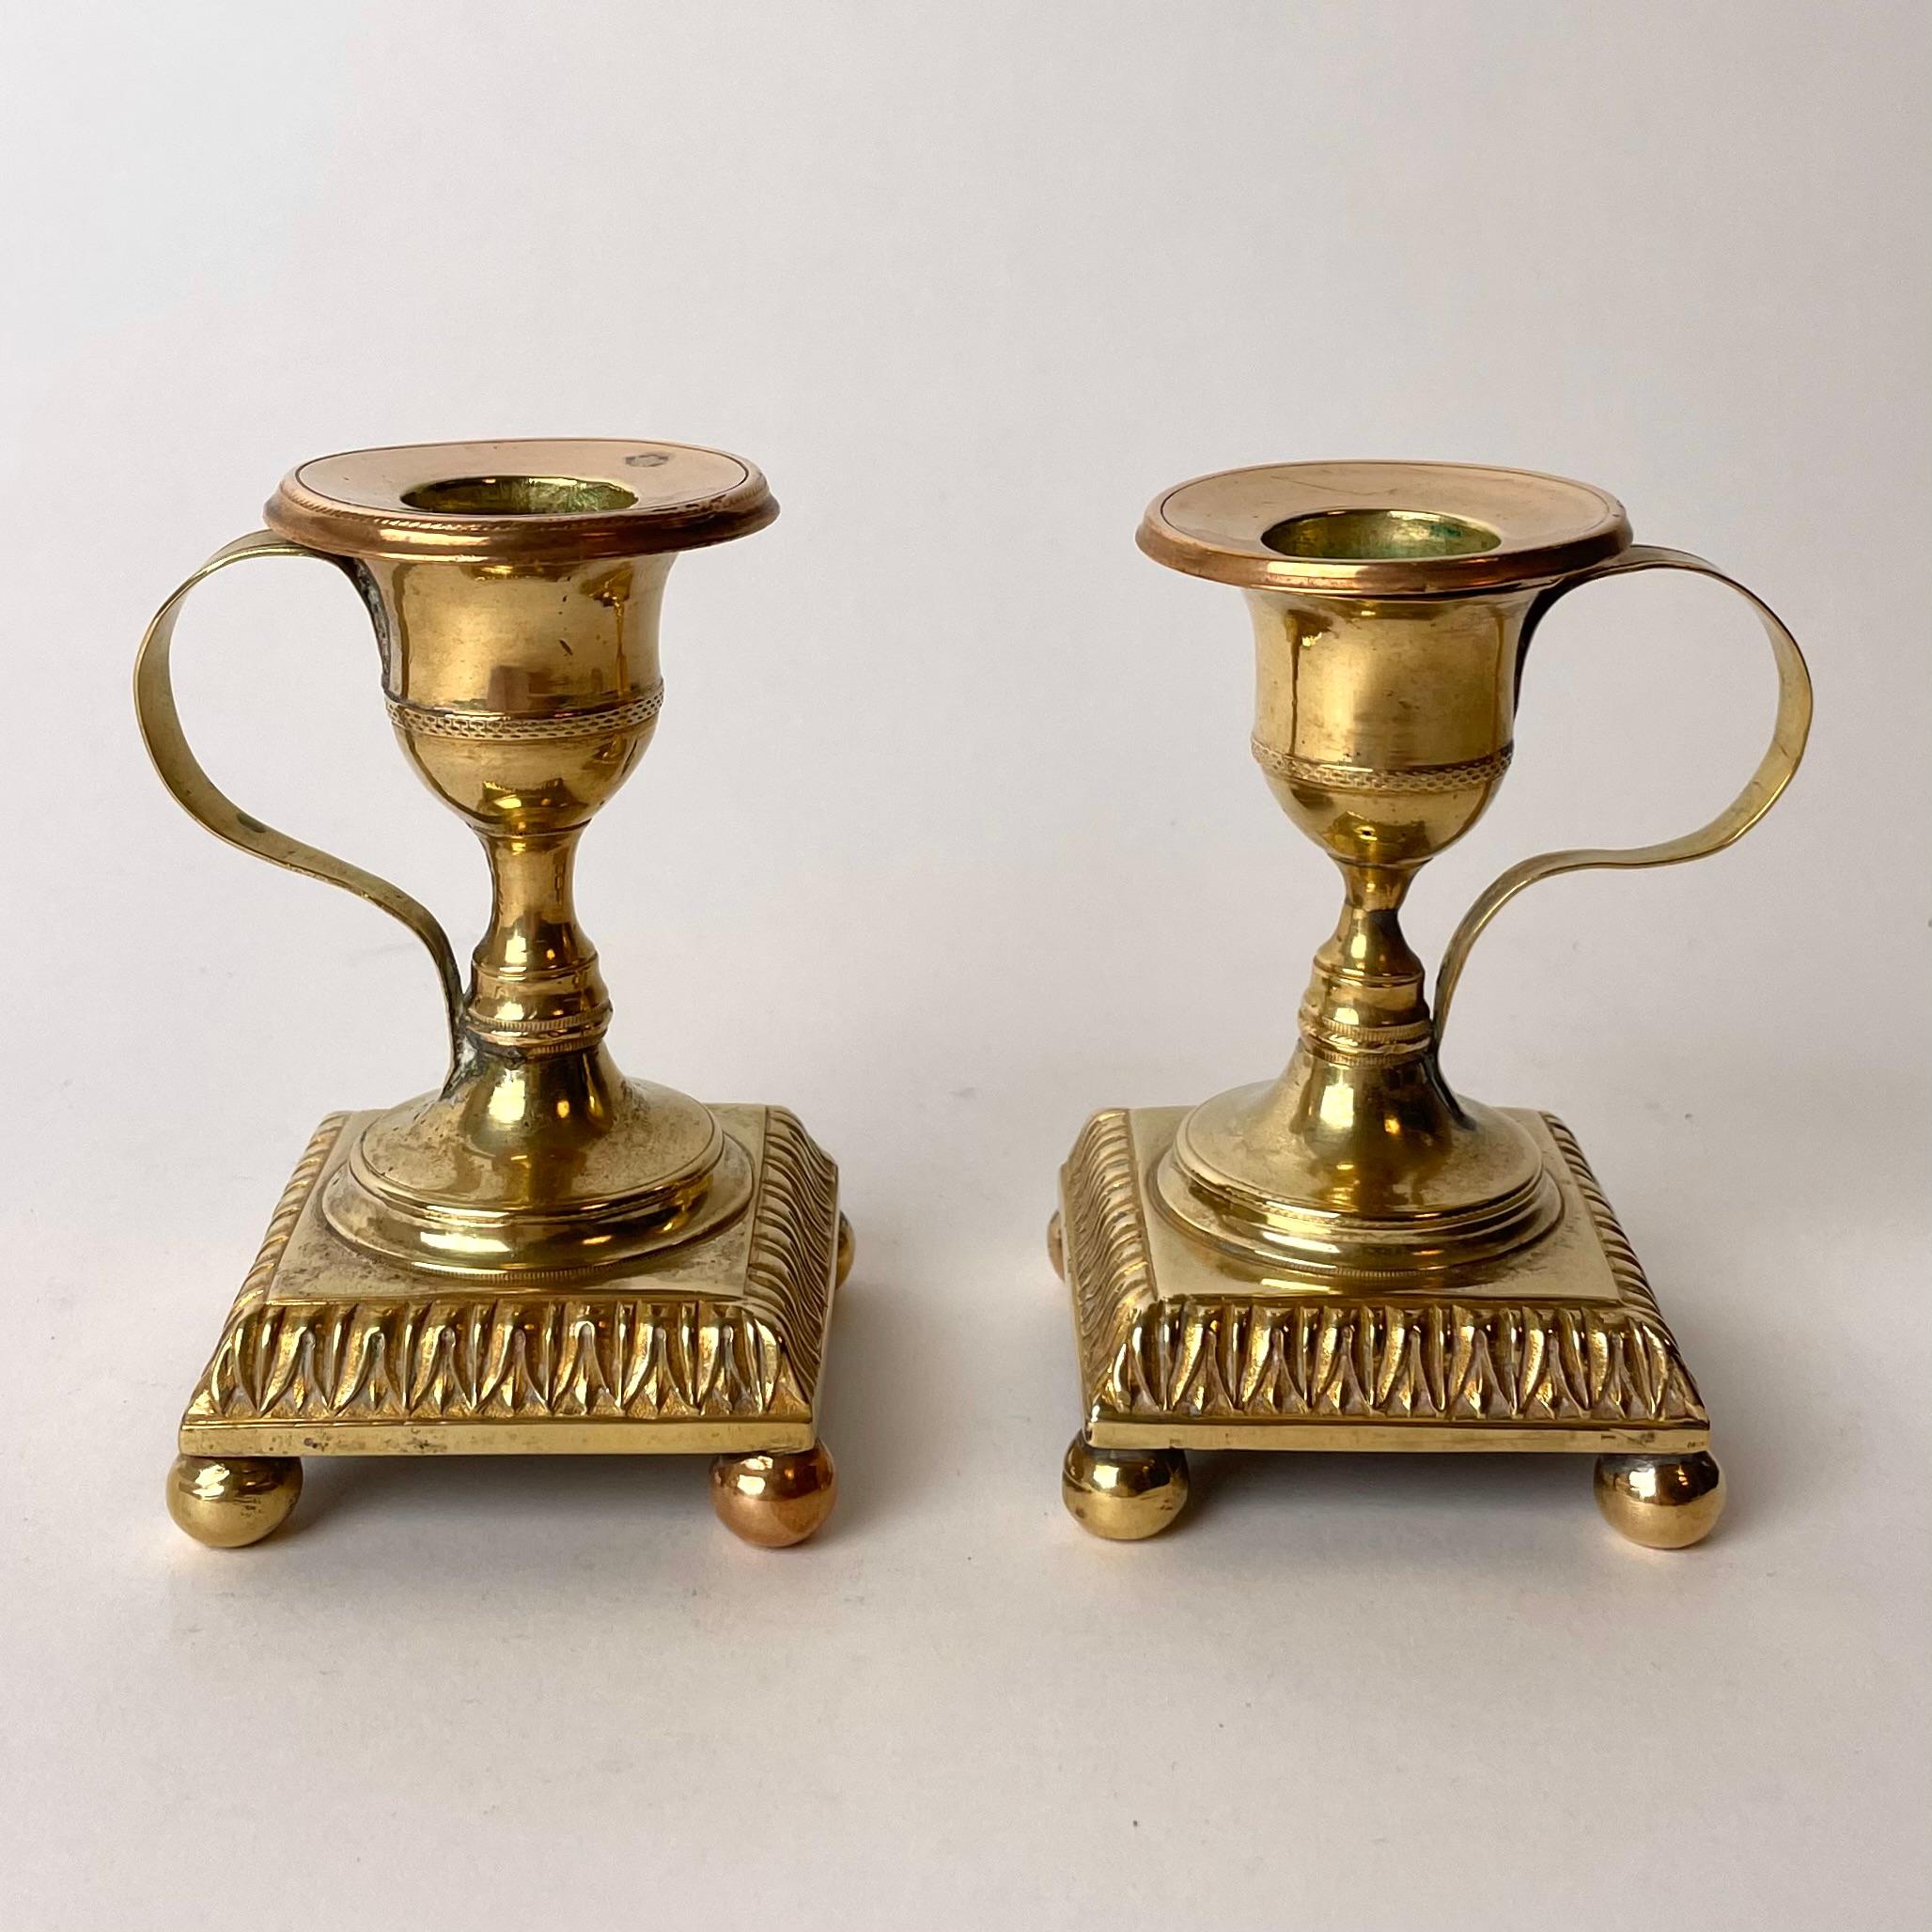 Ein kleines und charmantes Paar gustavianischer Nachtkerzenleuchter aus dem späten 18. Hergestellt in Schweden aus vergoldeter Bronze in den 1780-1790er Jahren.

Alters- und gebrauchsbedingte Abnutzungserscheinungen.